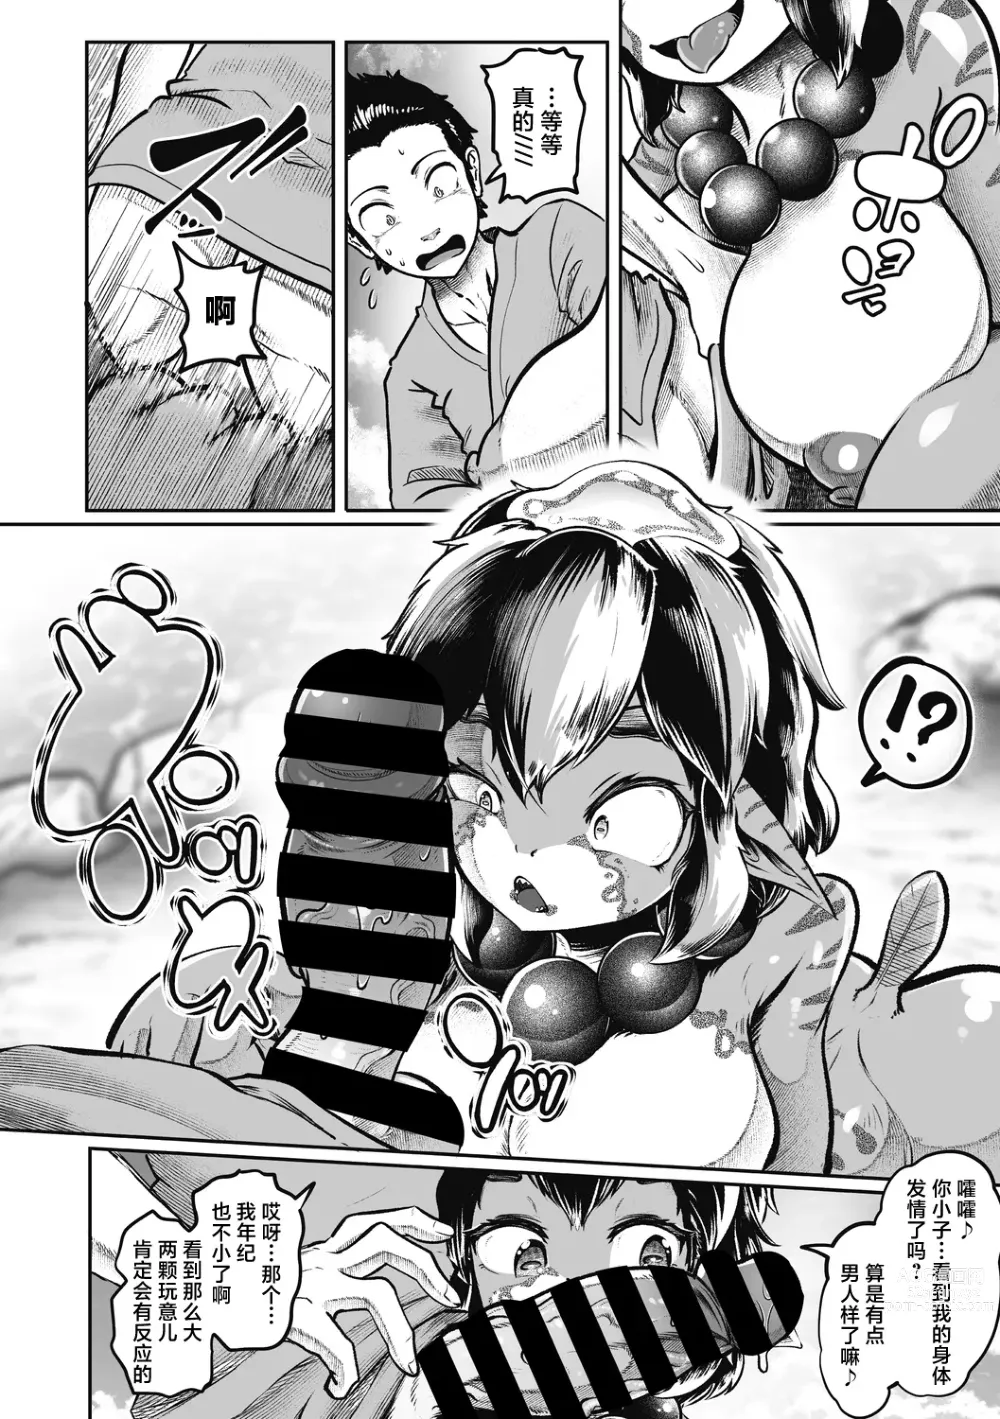 Page 5 of manga Natsu to Ame Tokidoki Uchiage Hanabi